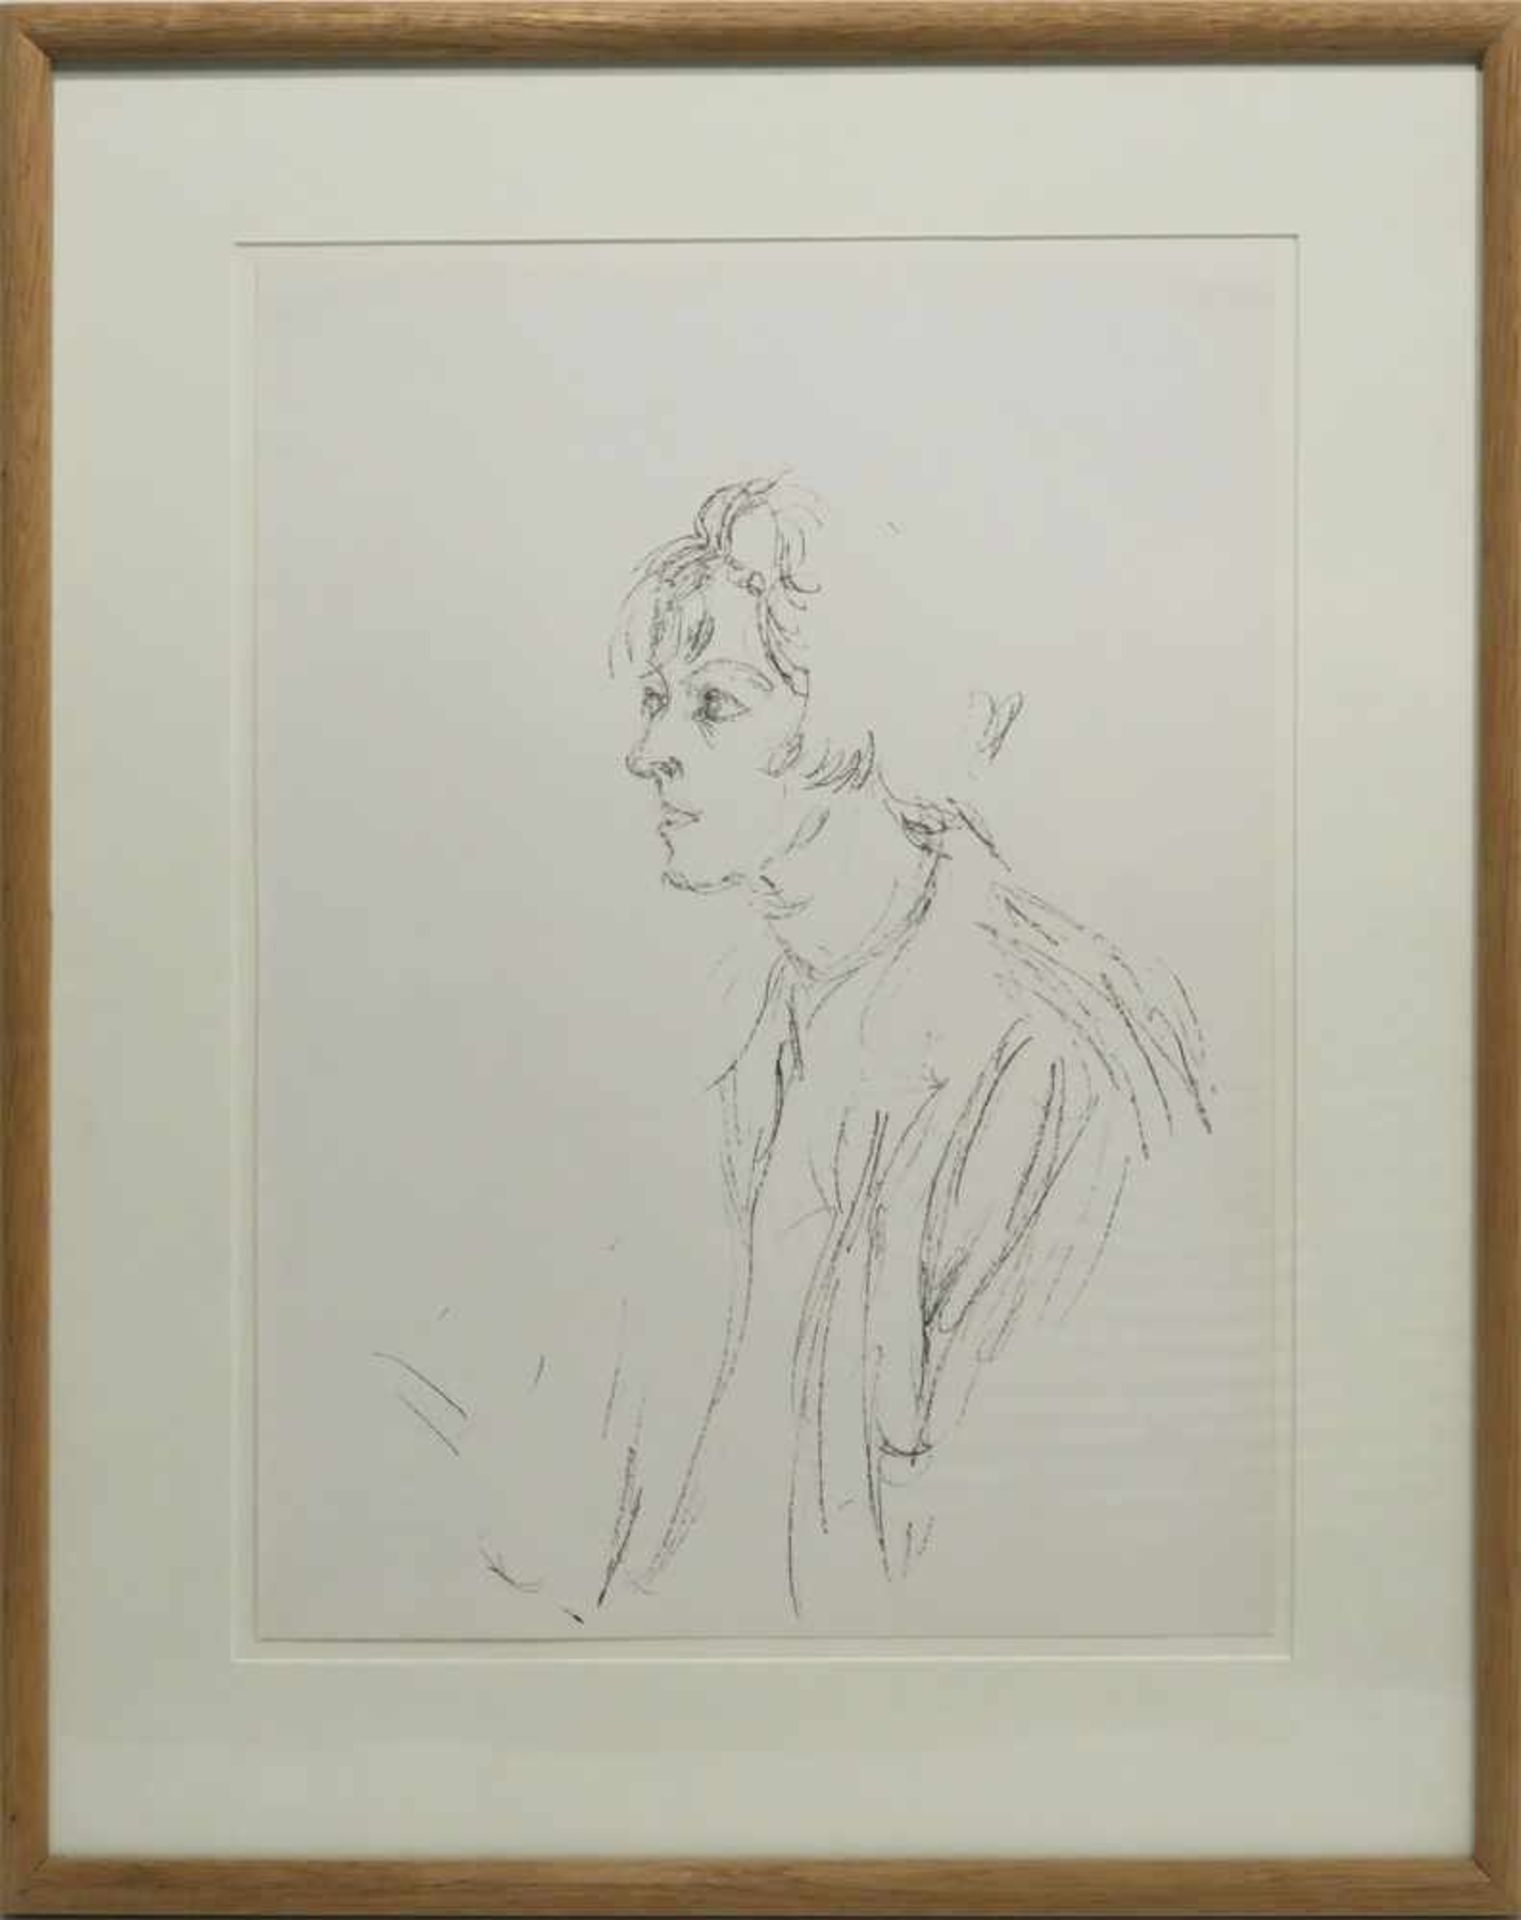 Giacometti, Alberto1901 Borgonovo - 1966 ChurFemme en profileLithographie. 38 x 28 cm. Kleine